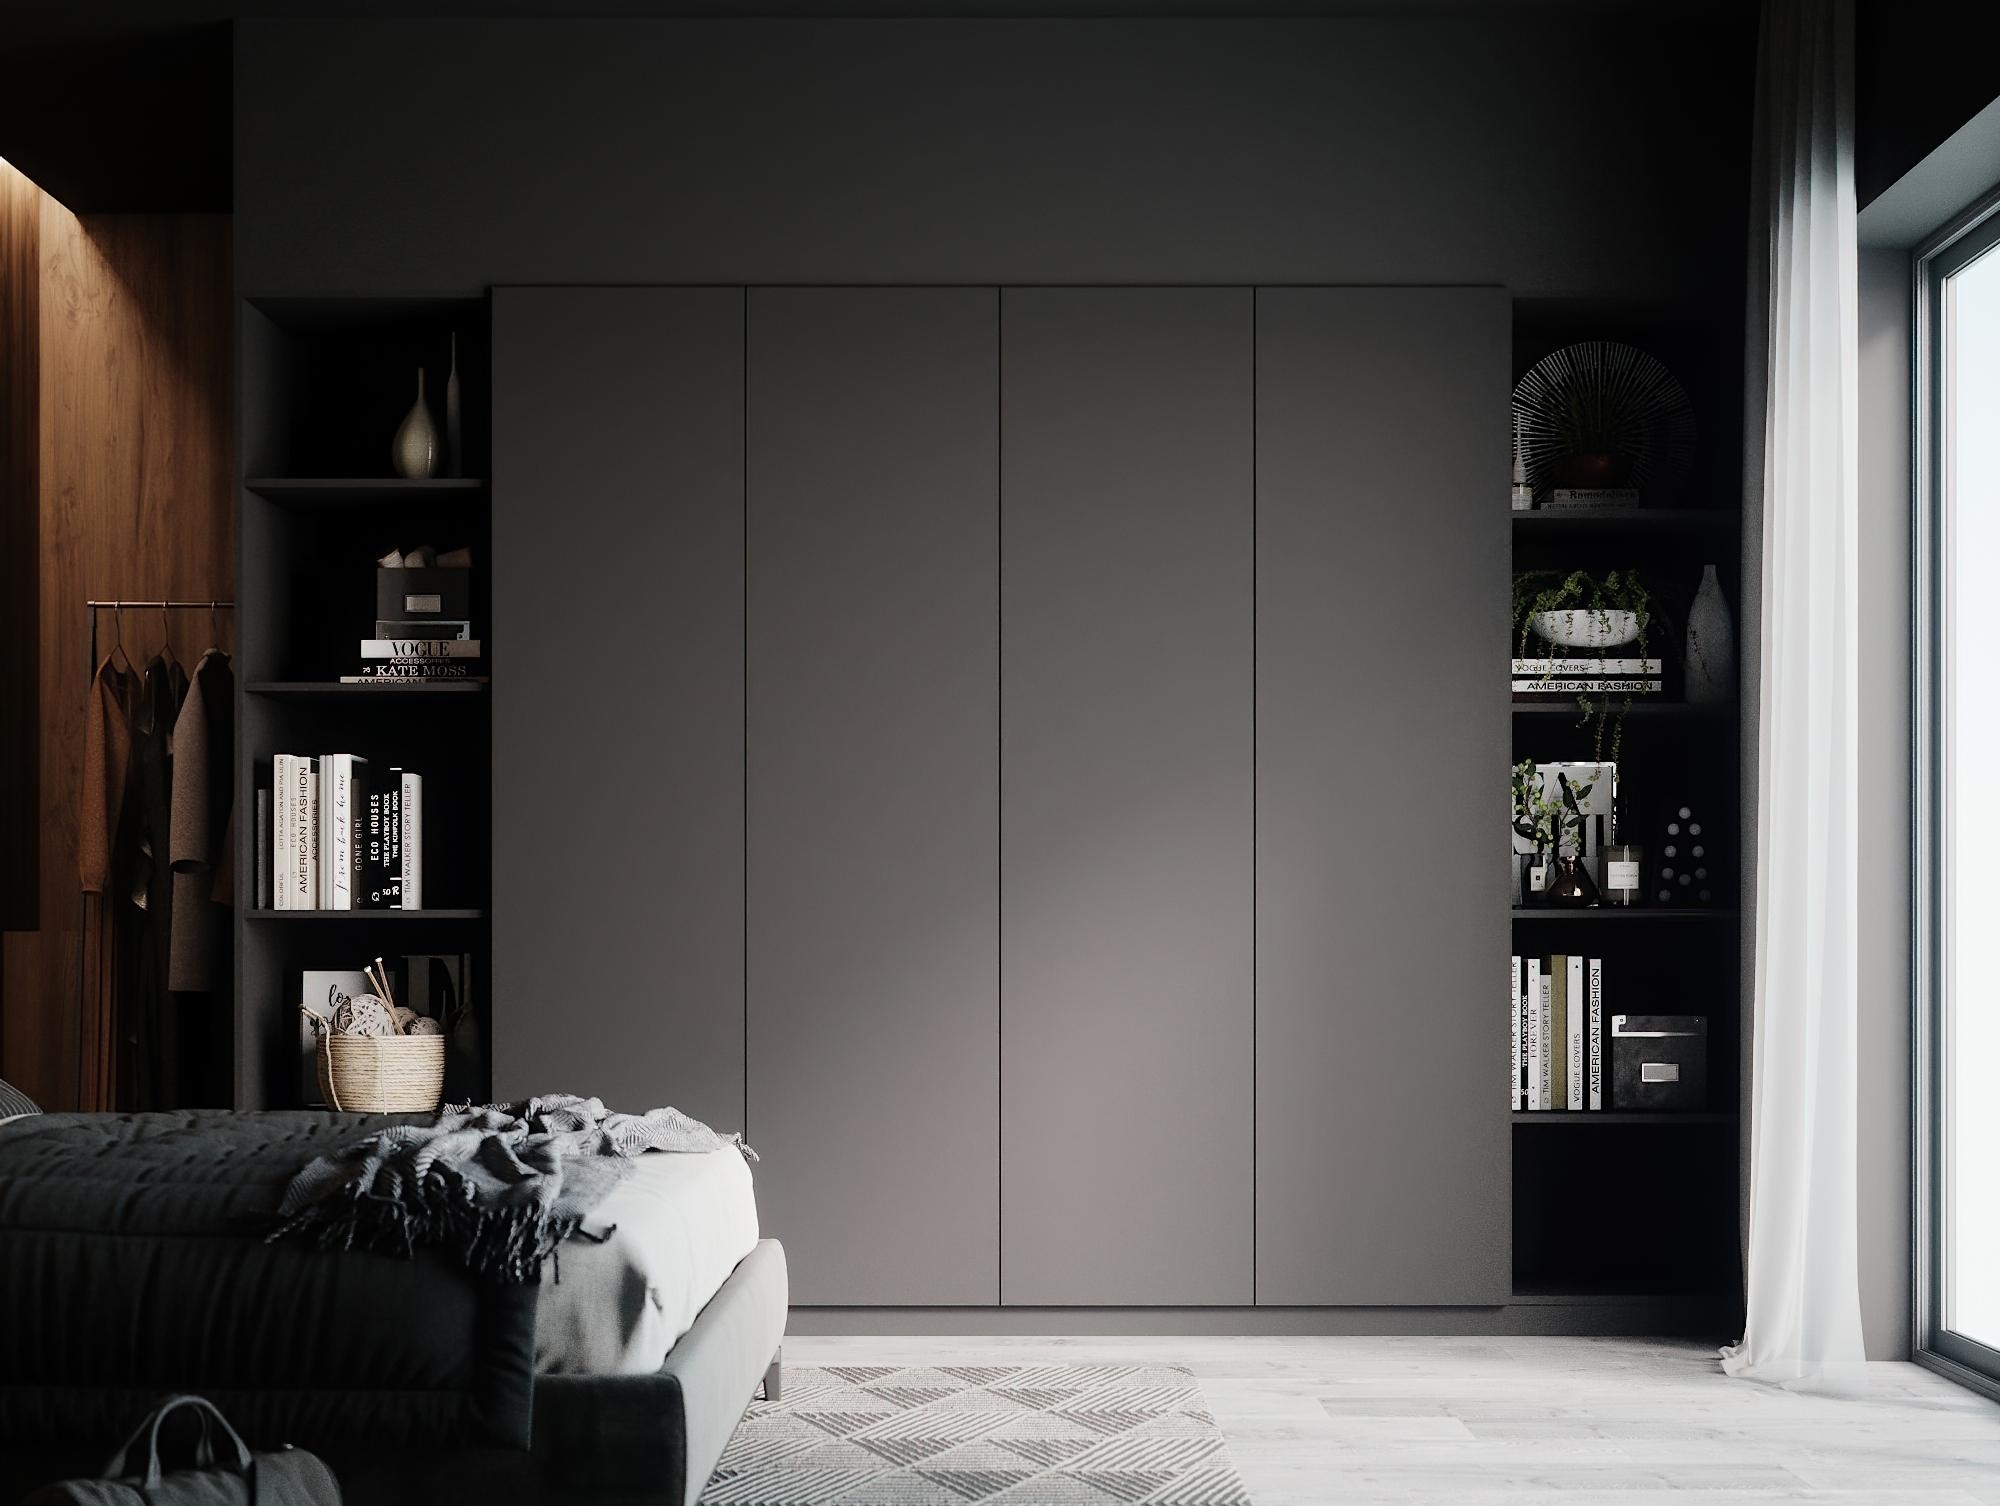 Interior in #grey. Wir wärs mit einem #Kleiderschrank in Farbton des Jahres #Grau? ©schrankwerk.de